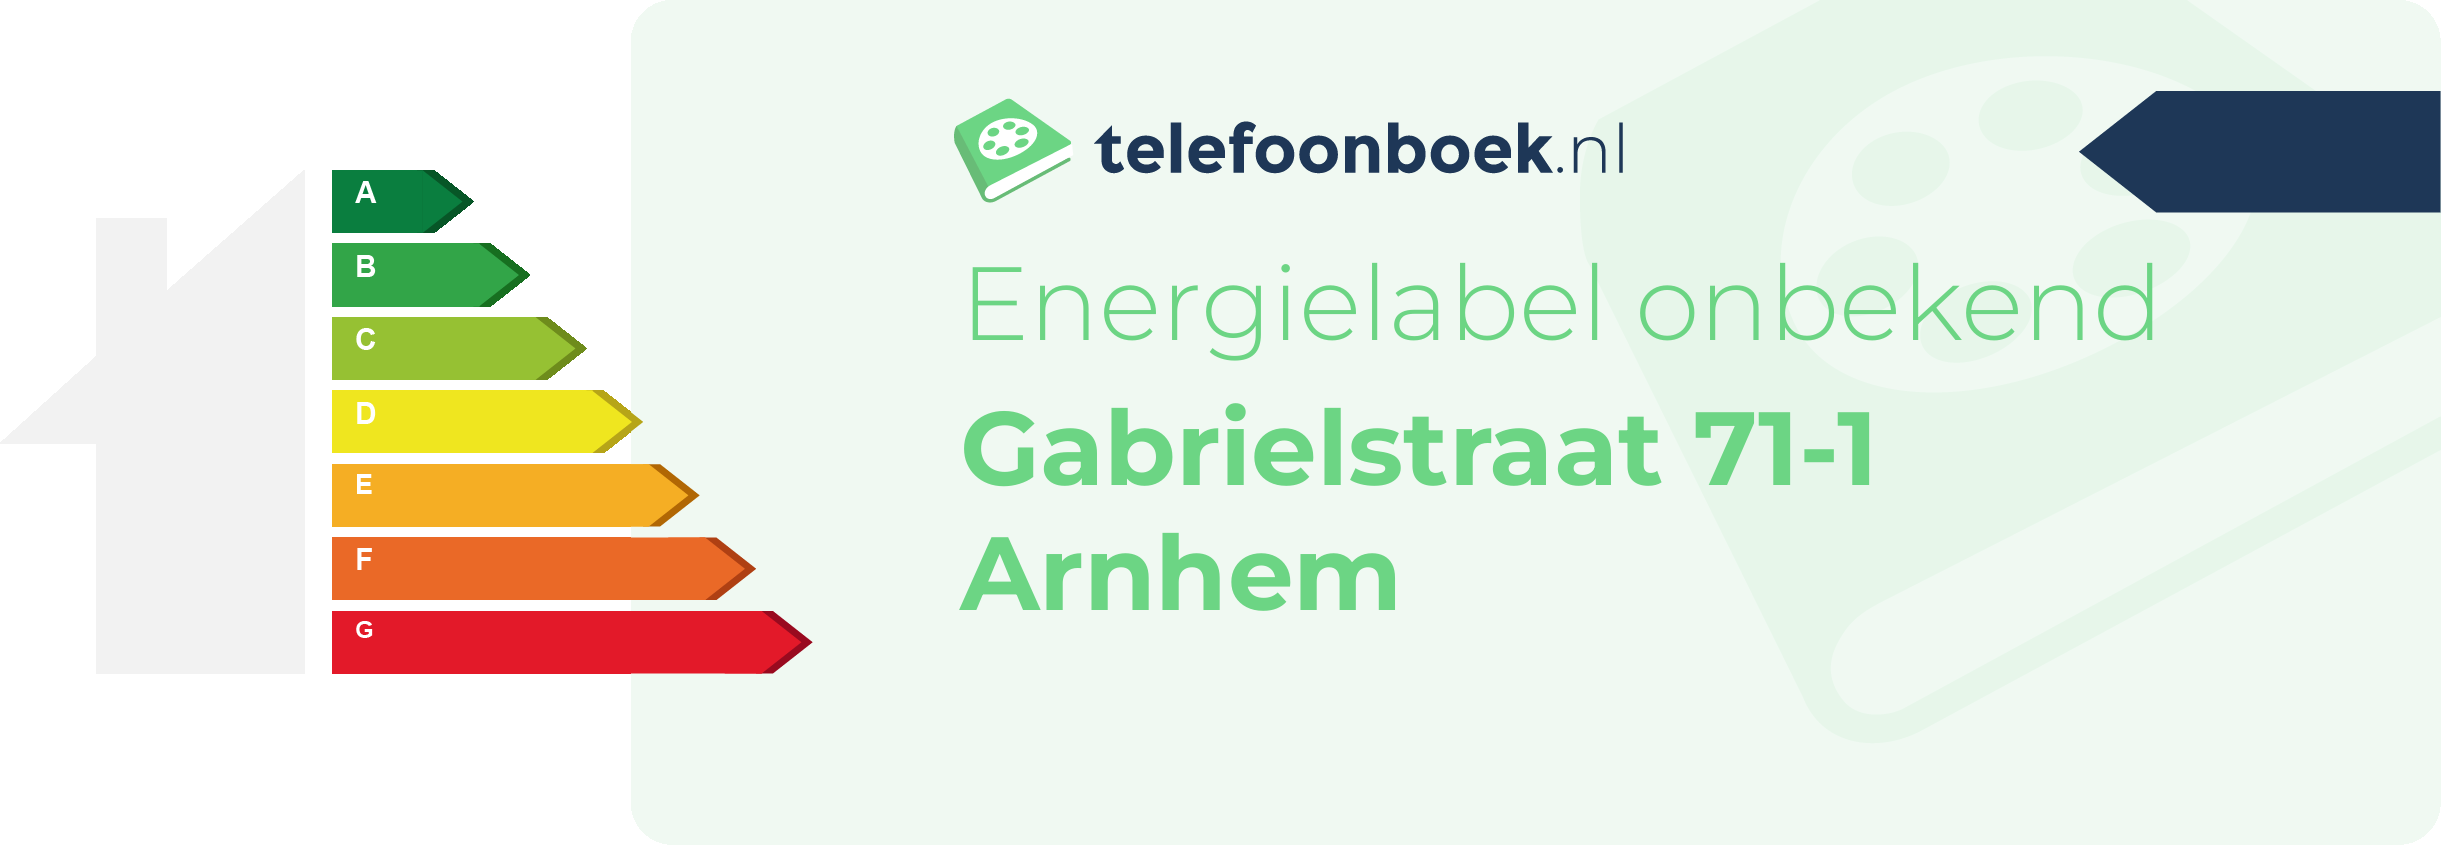 Energielabel Gabrielstraat 71-1 Arnhem